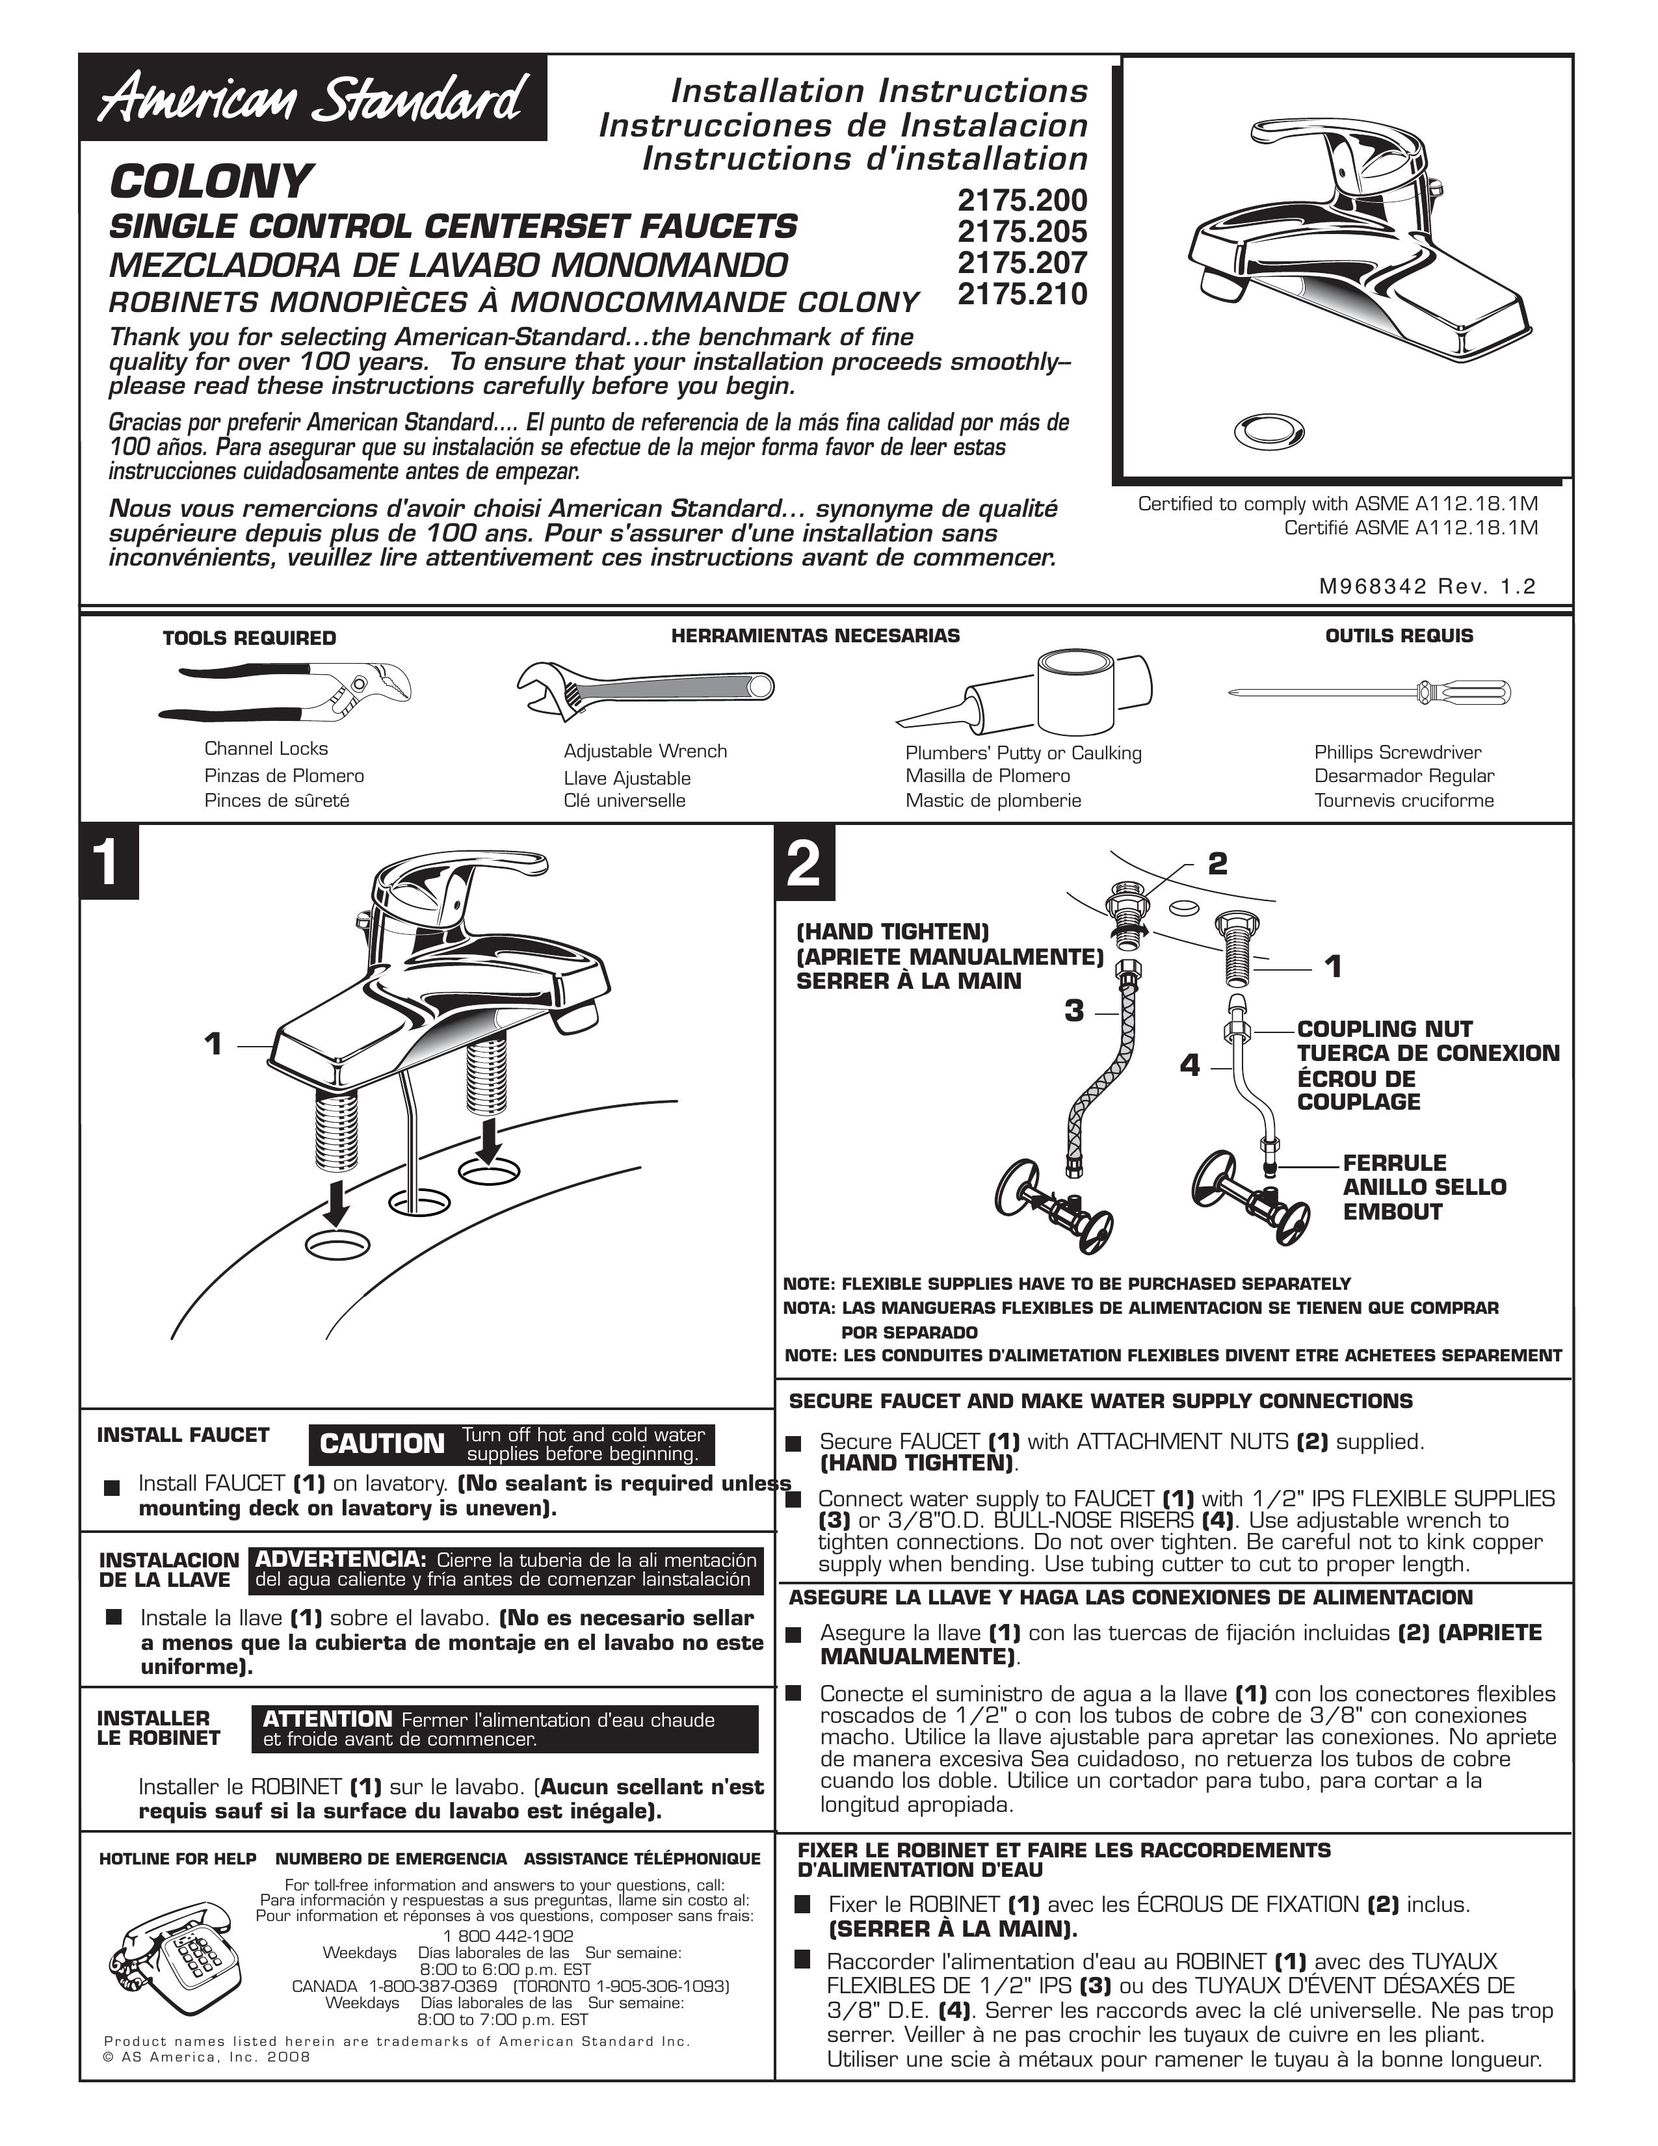 American Standard 2175.21 Plumbing Product User Manual